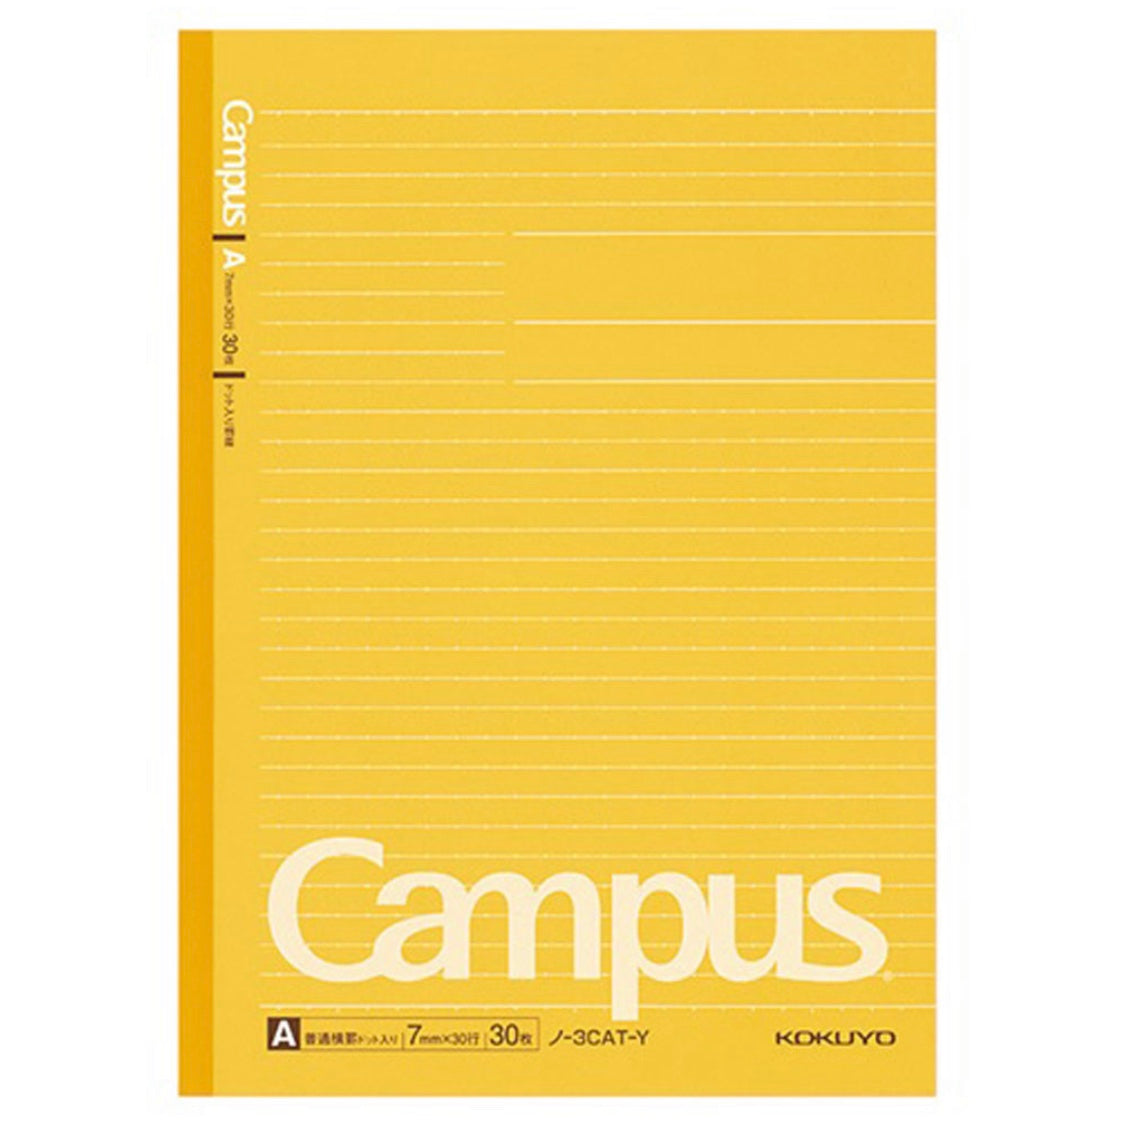 Kokuyo Campus Notebook - Semi B5 - Dotted 7 mm Rule - Yellow